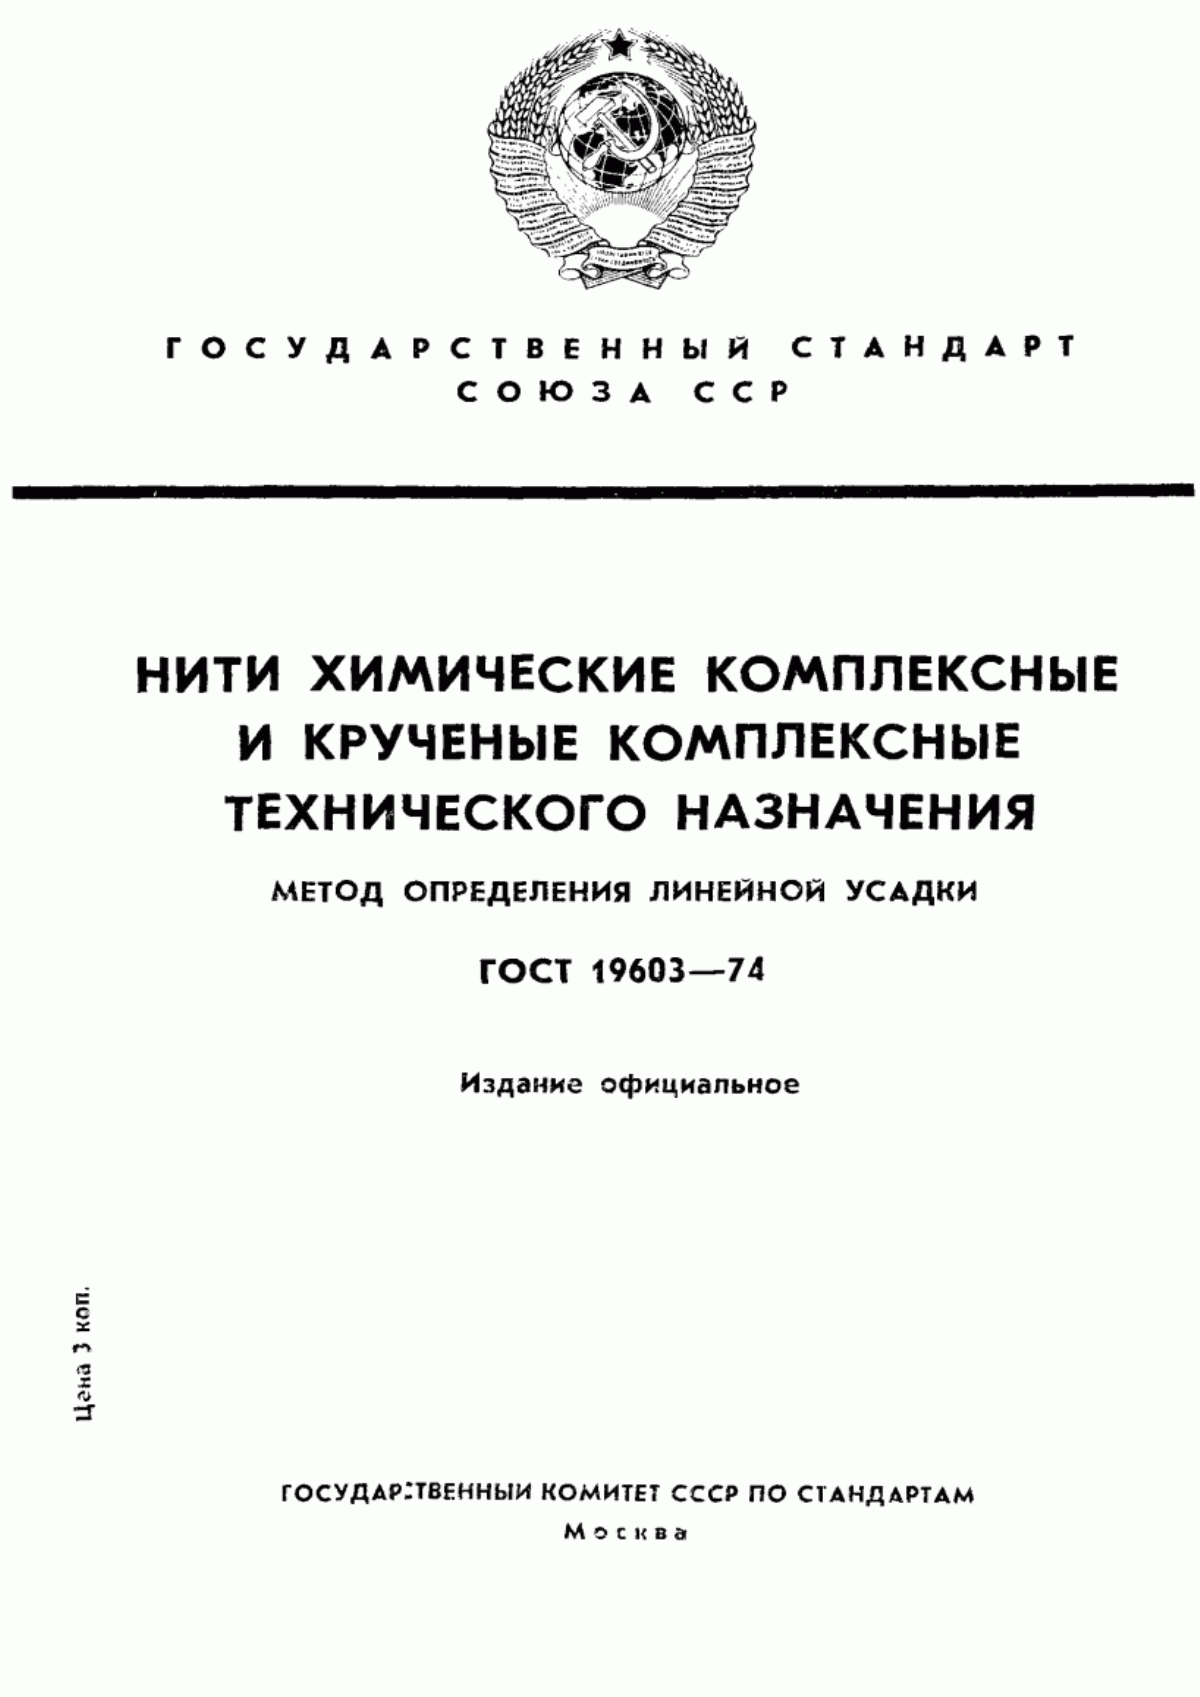 ГОСТ 19603-74 Нити химические комплексные и крученые комплексные технического назначения. Метод определения линейной усадки